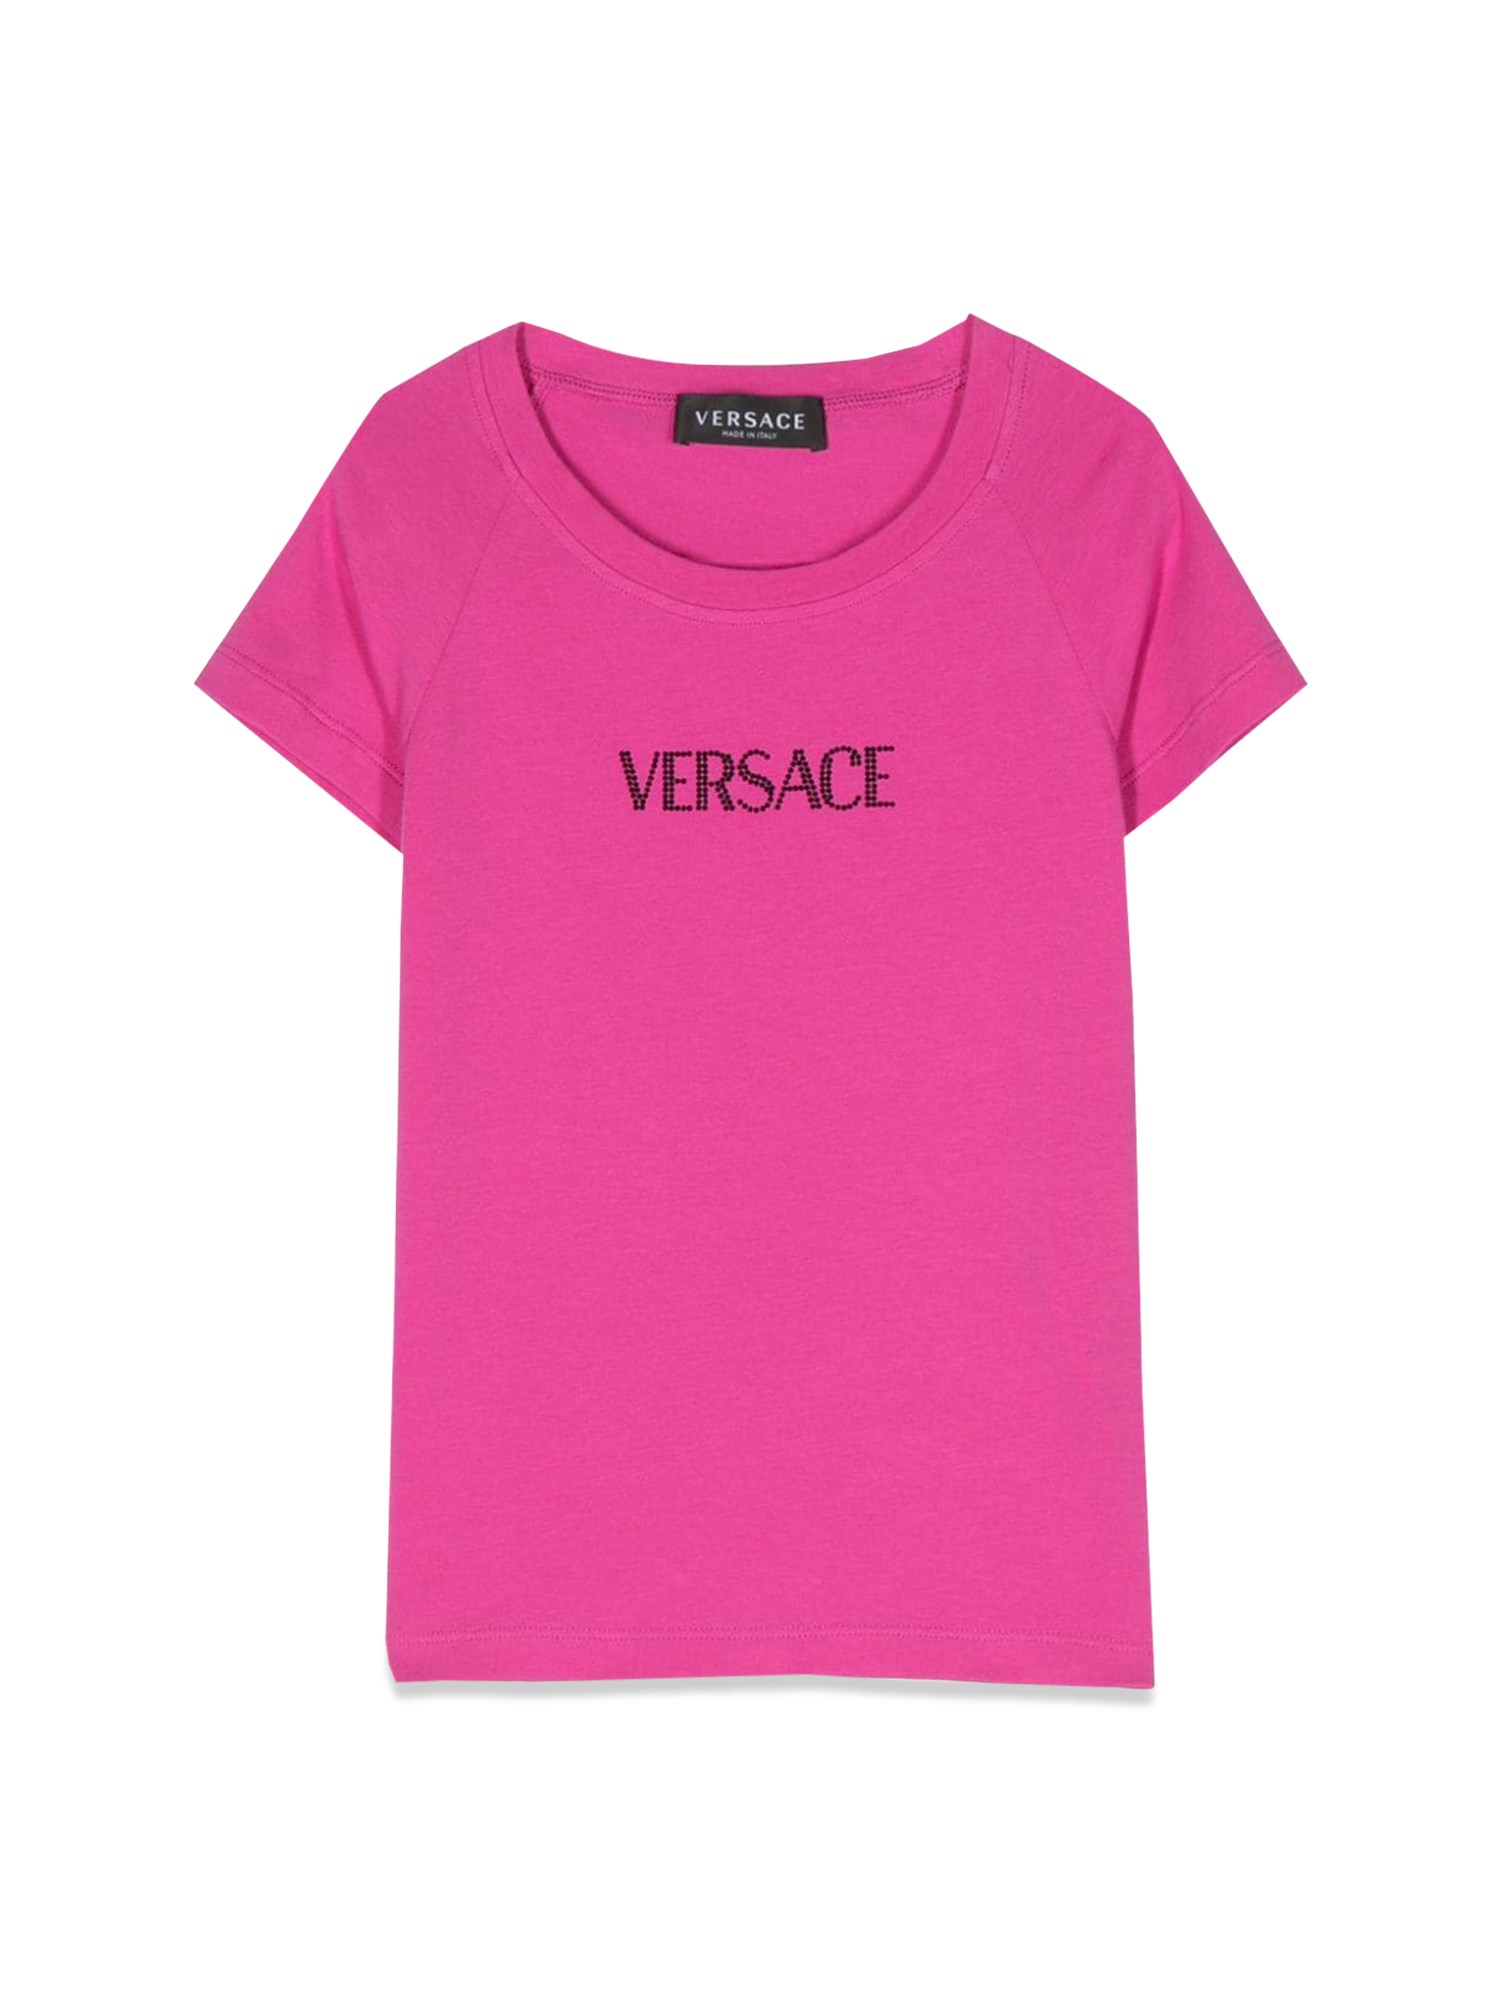 versace rhinestone logo t-shirt